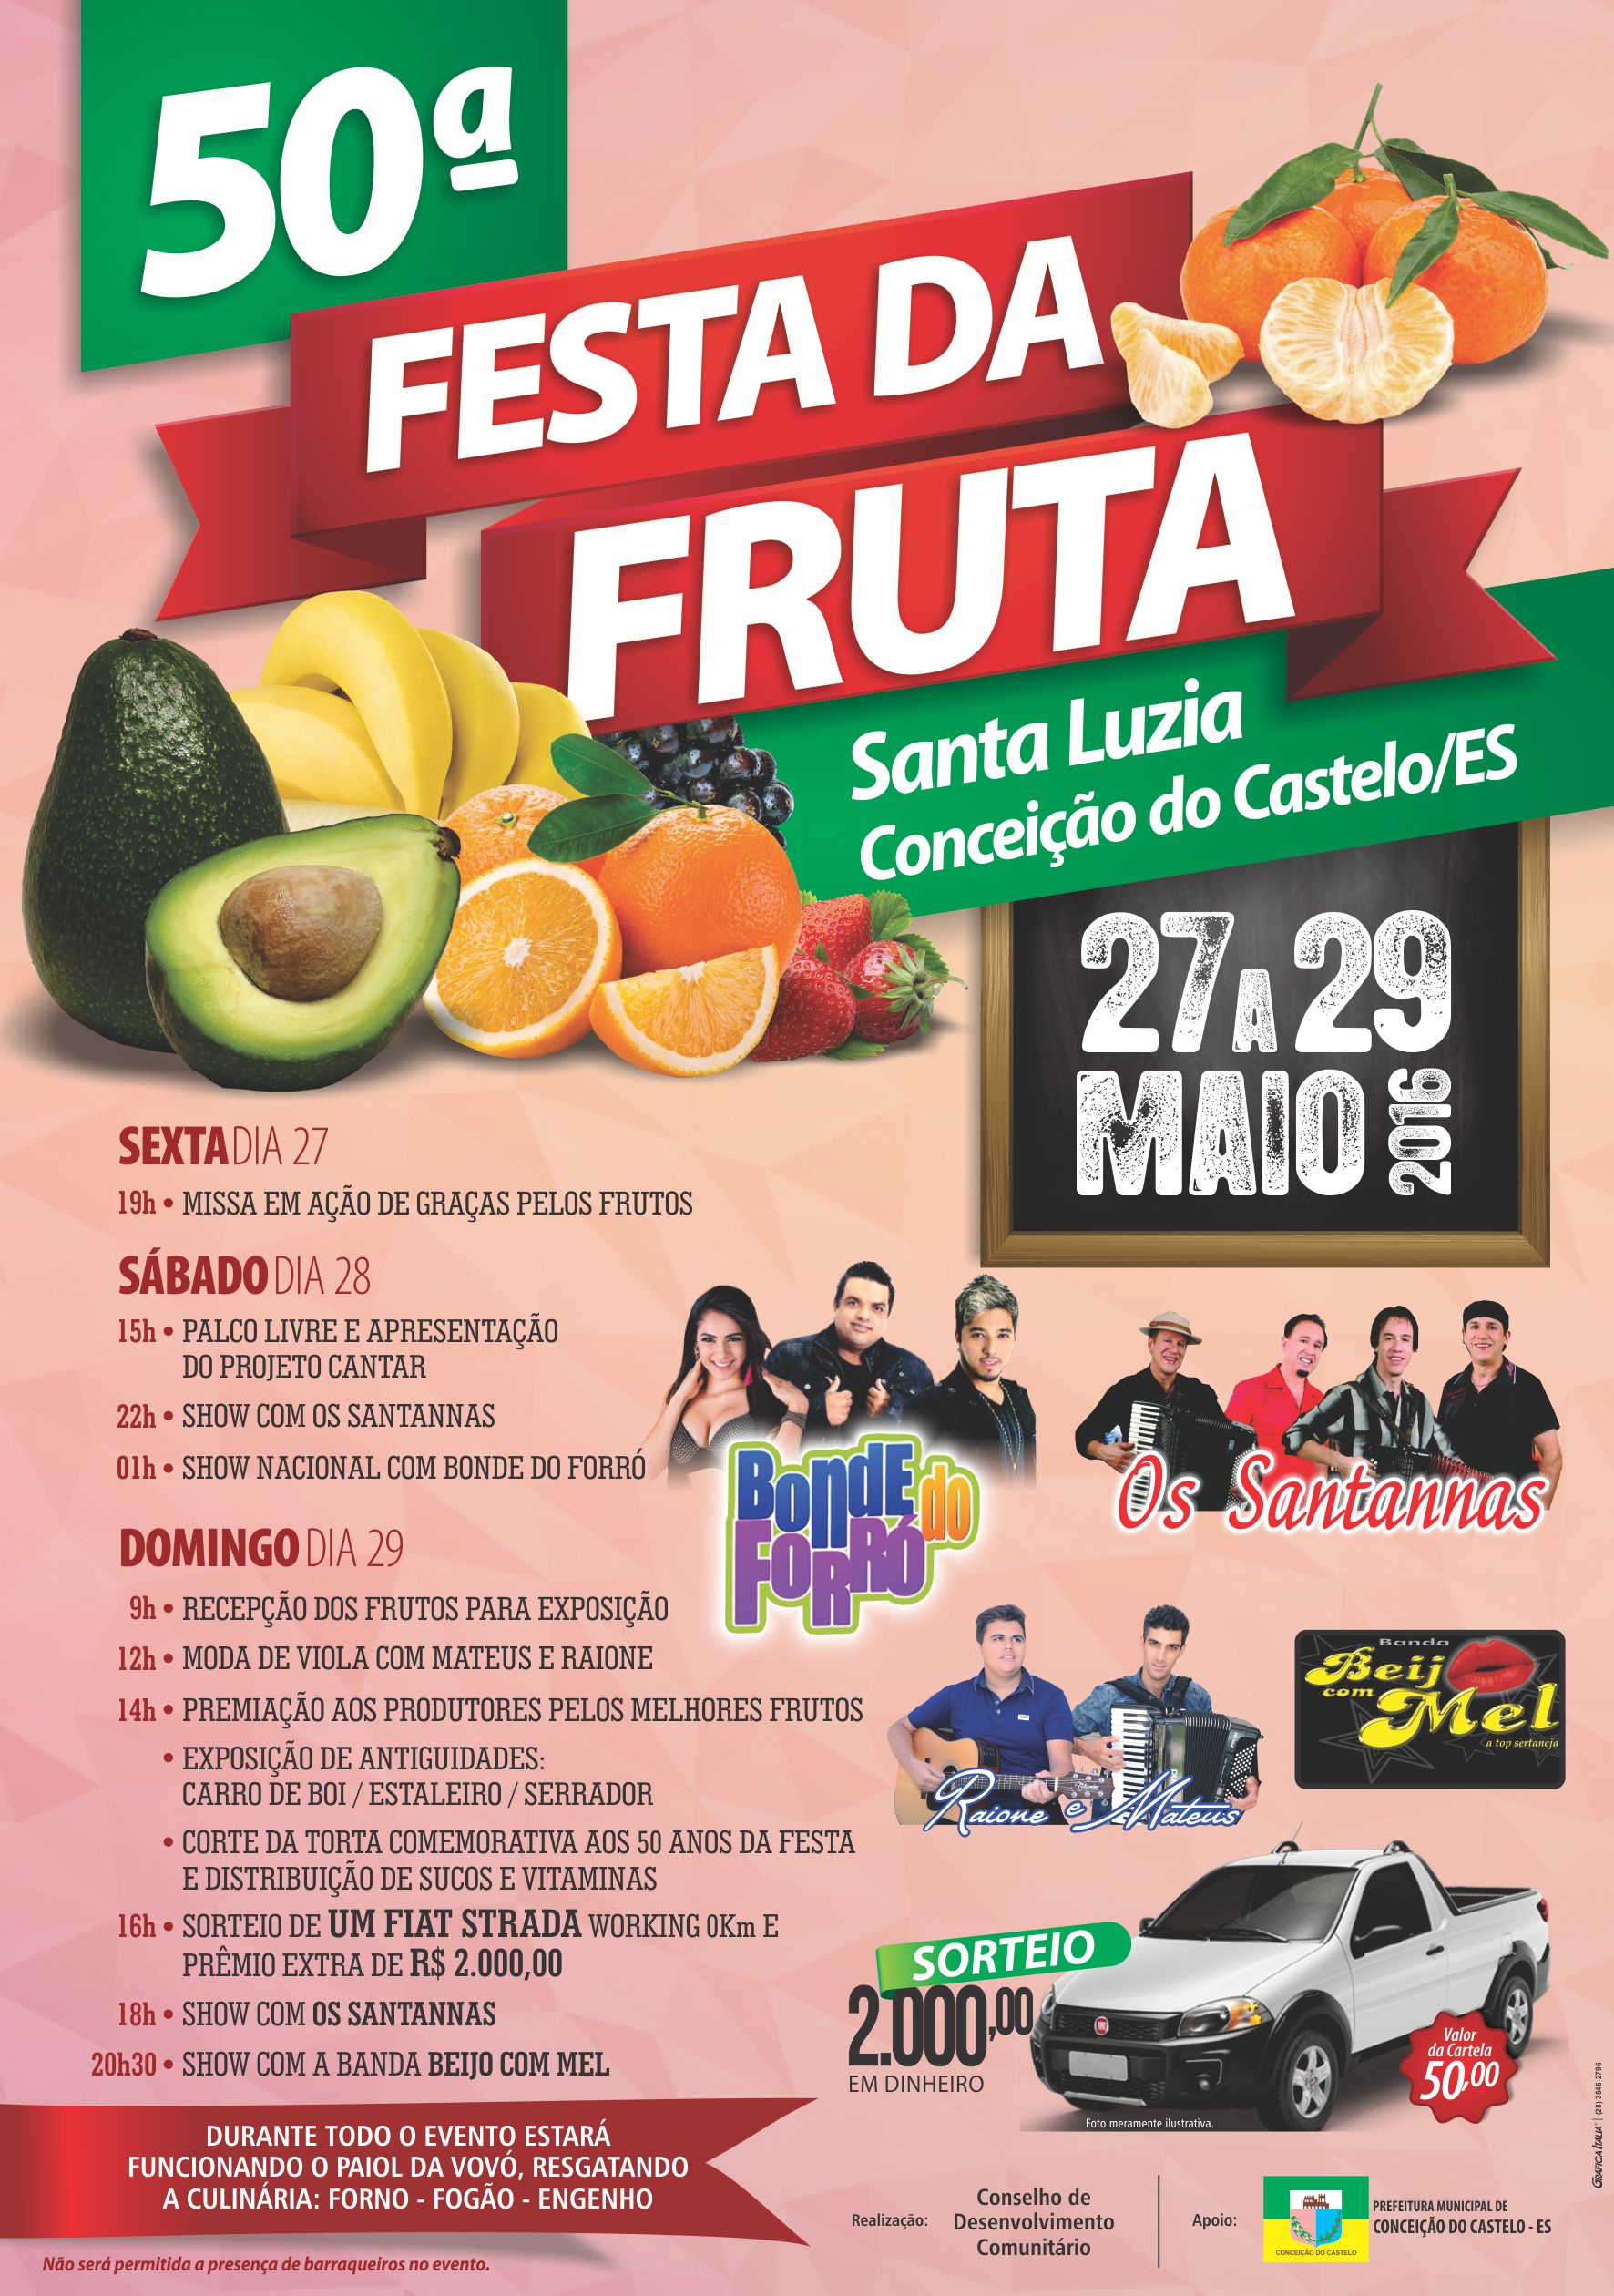 50ª Festa da Fruta em Santa Luzia, Conceição do Castelo acontece de 27 a 29 de maio